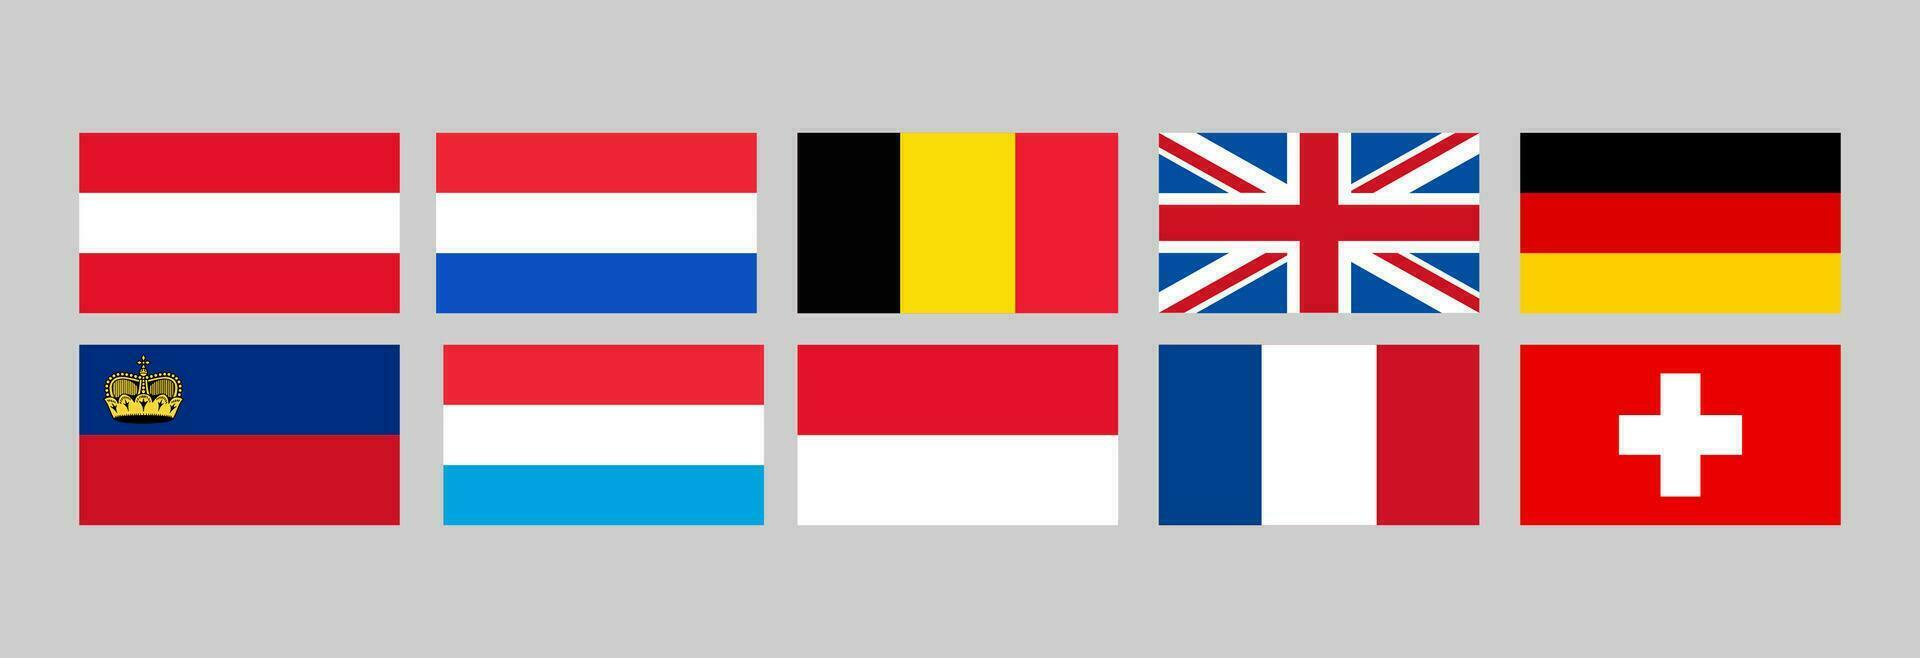 Mapa da França, Alemanha, Bélgica, Holanda, Luxembur